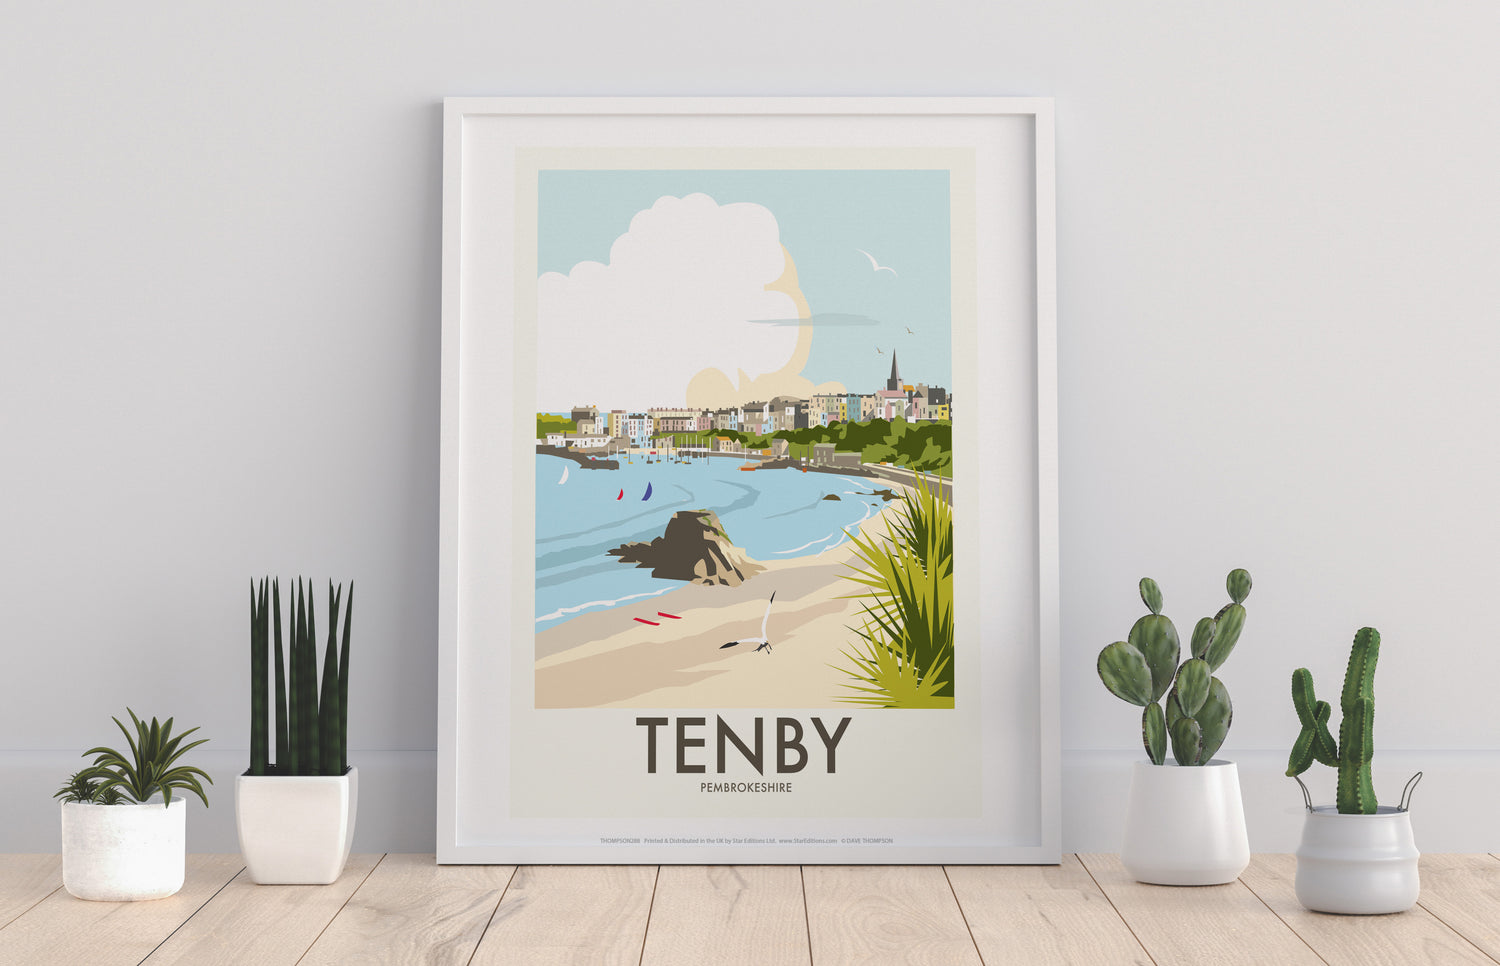 Tenby, Wales - Art Print